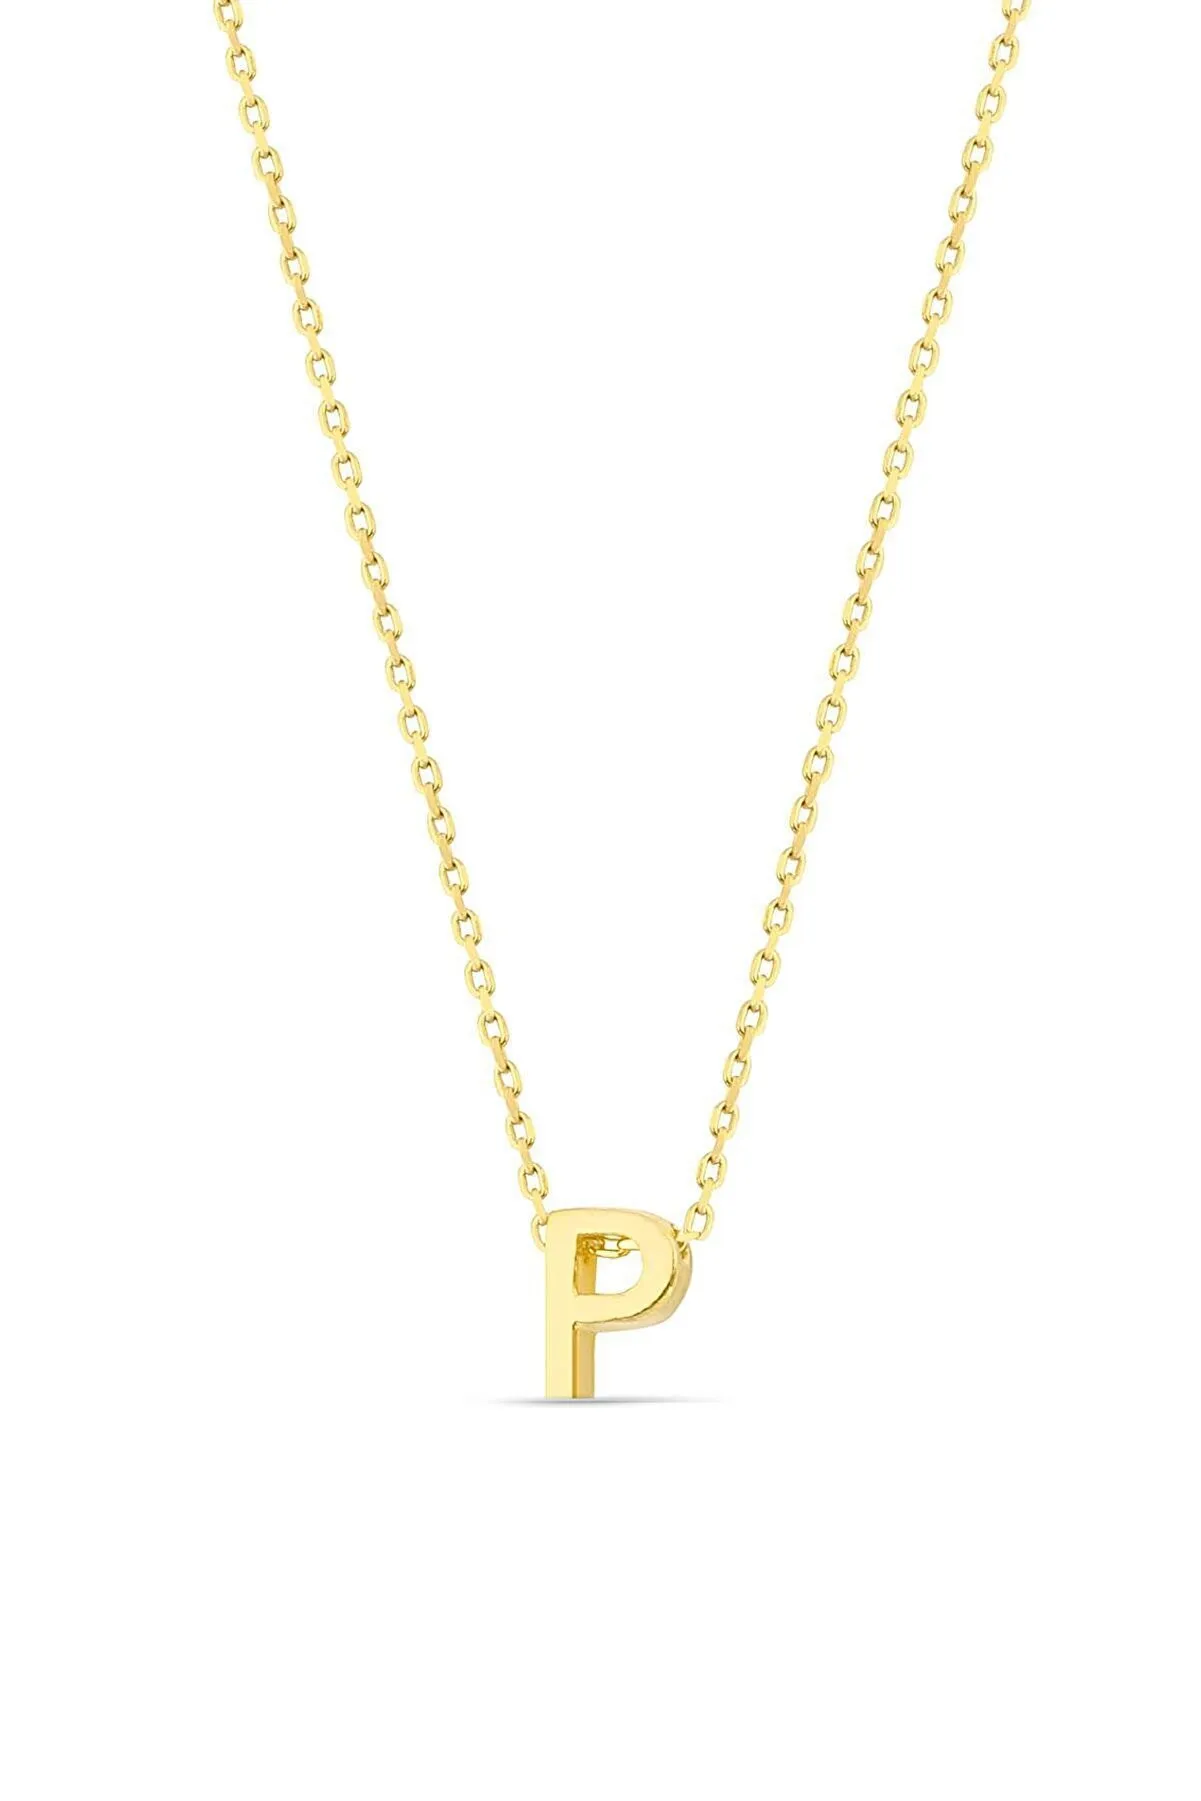 Серебряное ожерелье с буквой P в обьёме 3d pp001l Larin Silver#2